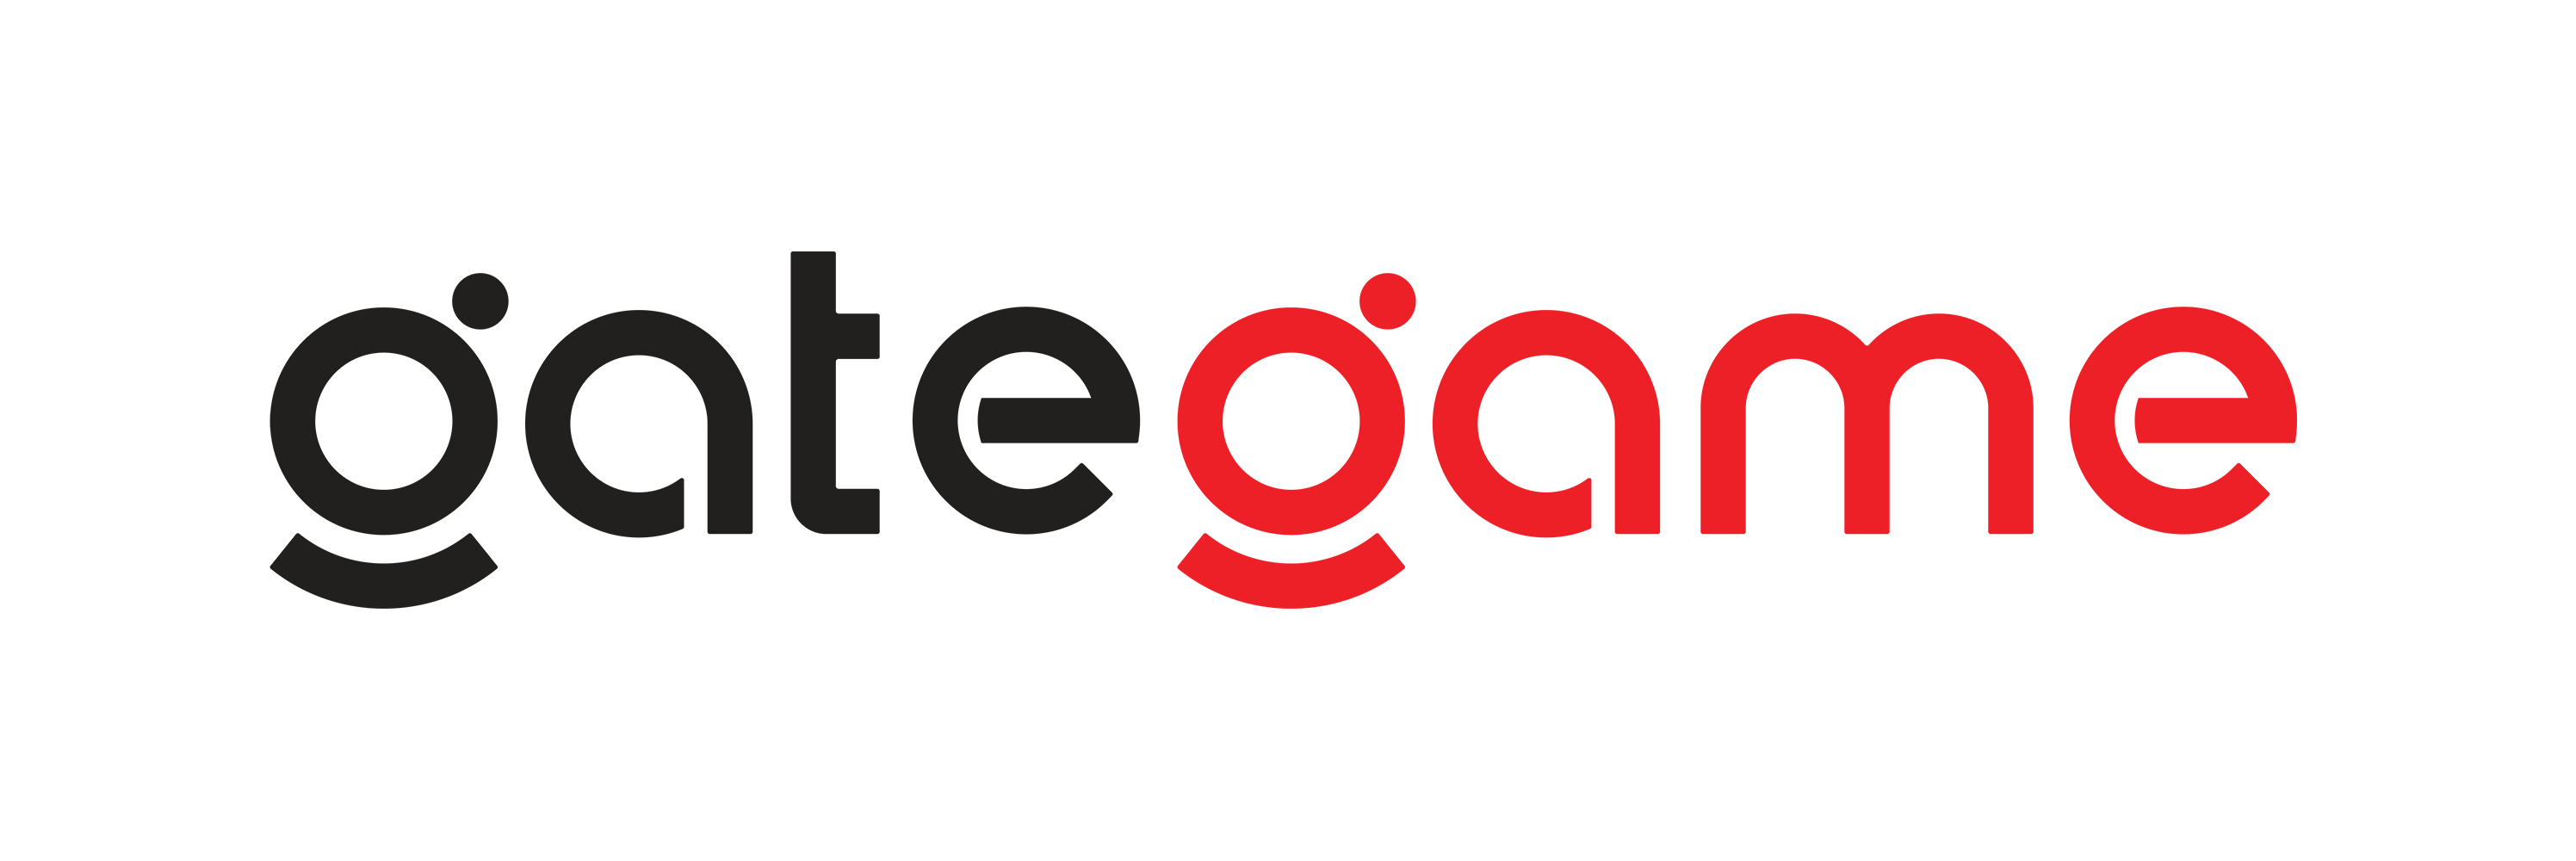 GateGame – Cổng game Việt Nam | Cổng thông tin game, game mới, game HOT, BXH game dành cho cộng đồng game thủ